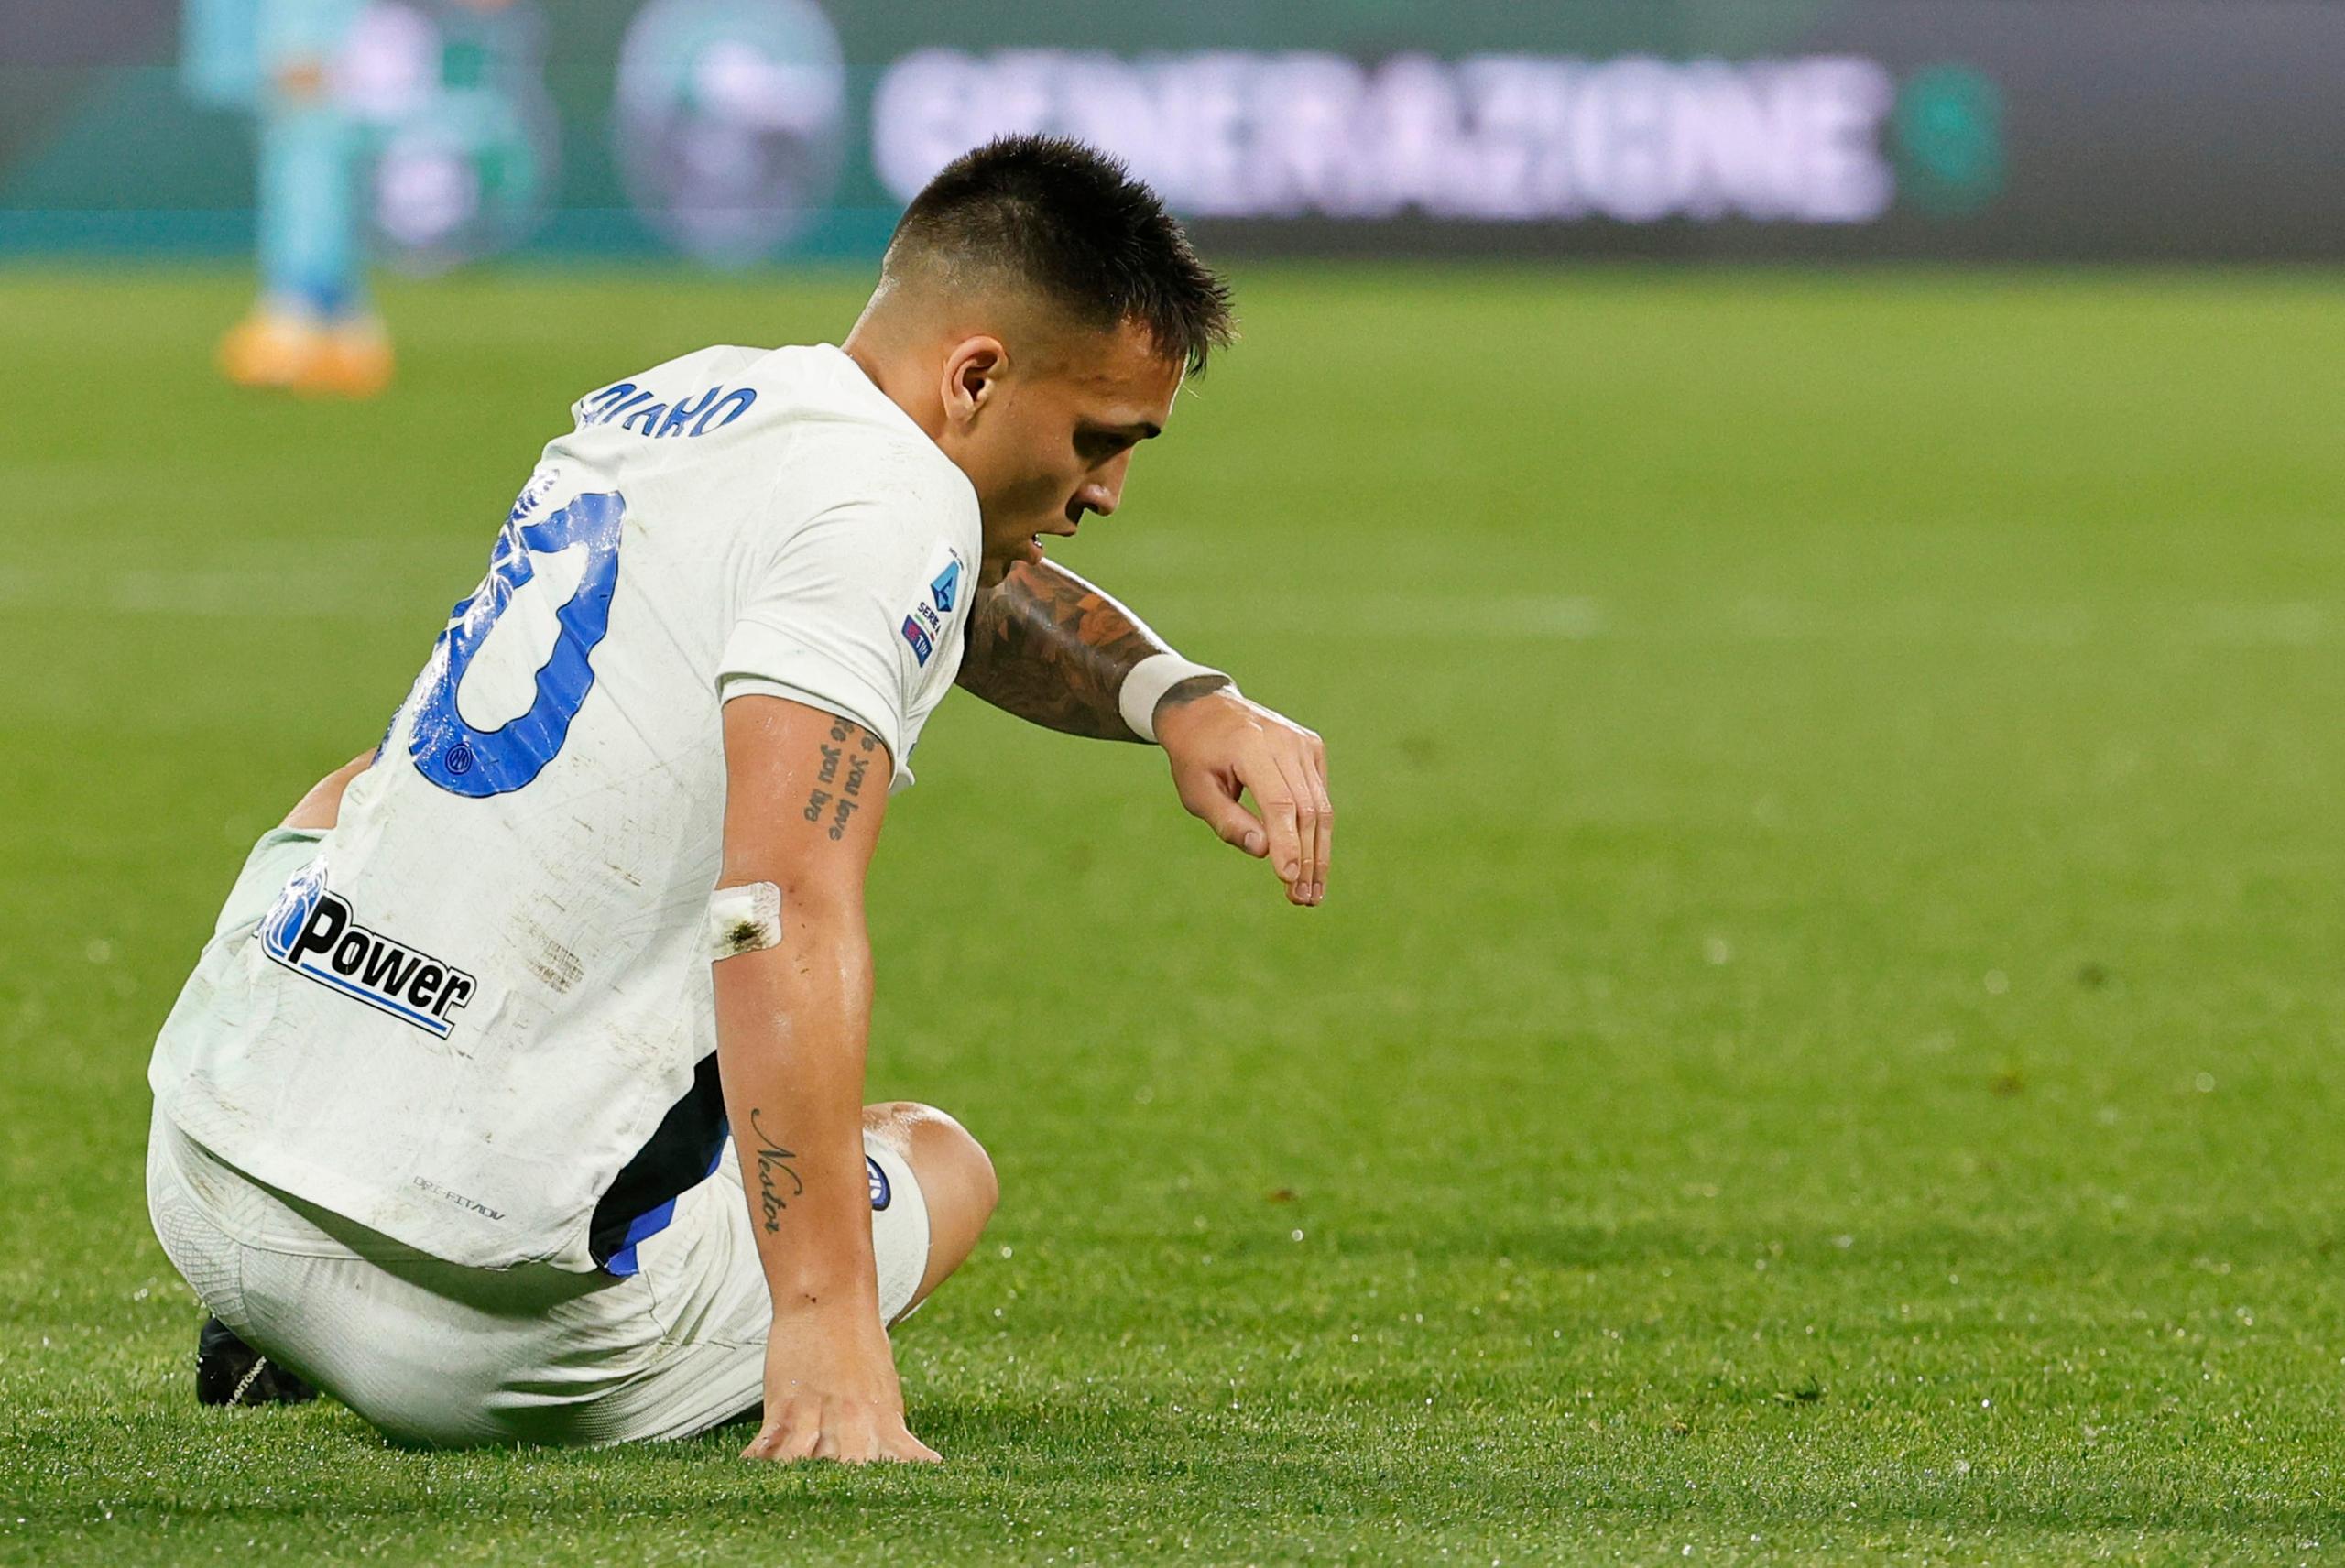 L’Inter in festa cade a Reggio Emilia, colpo di Ballardini: 1 0, decide Laurientè